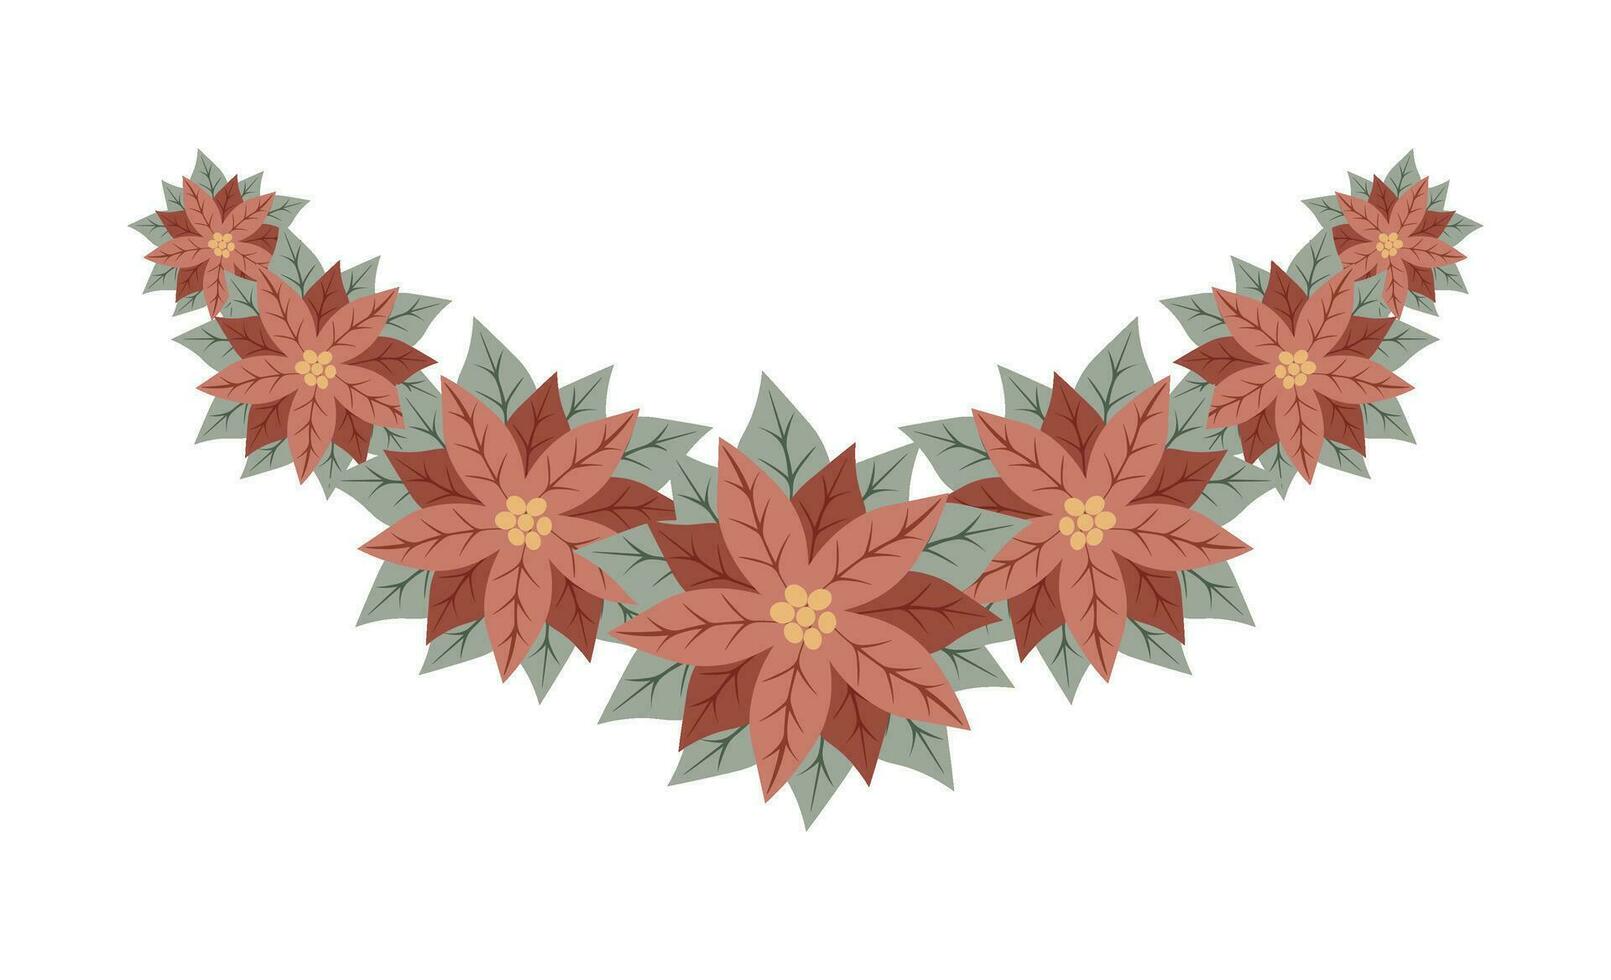 decorativo rama de rojo flor de pascua flores aislado floral nuevo año y Navidad decoración para saludo tarjeta, invitación, fiesta diseño vector